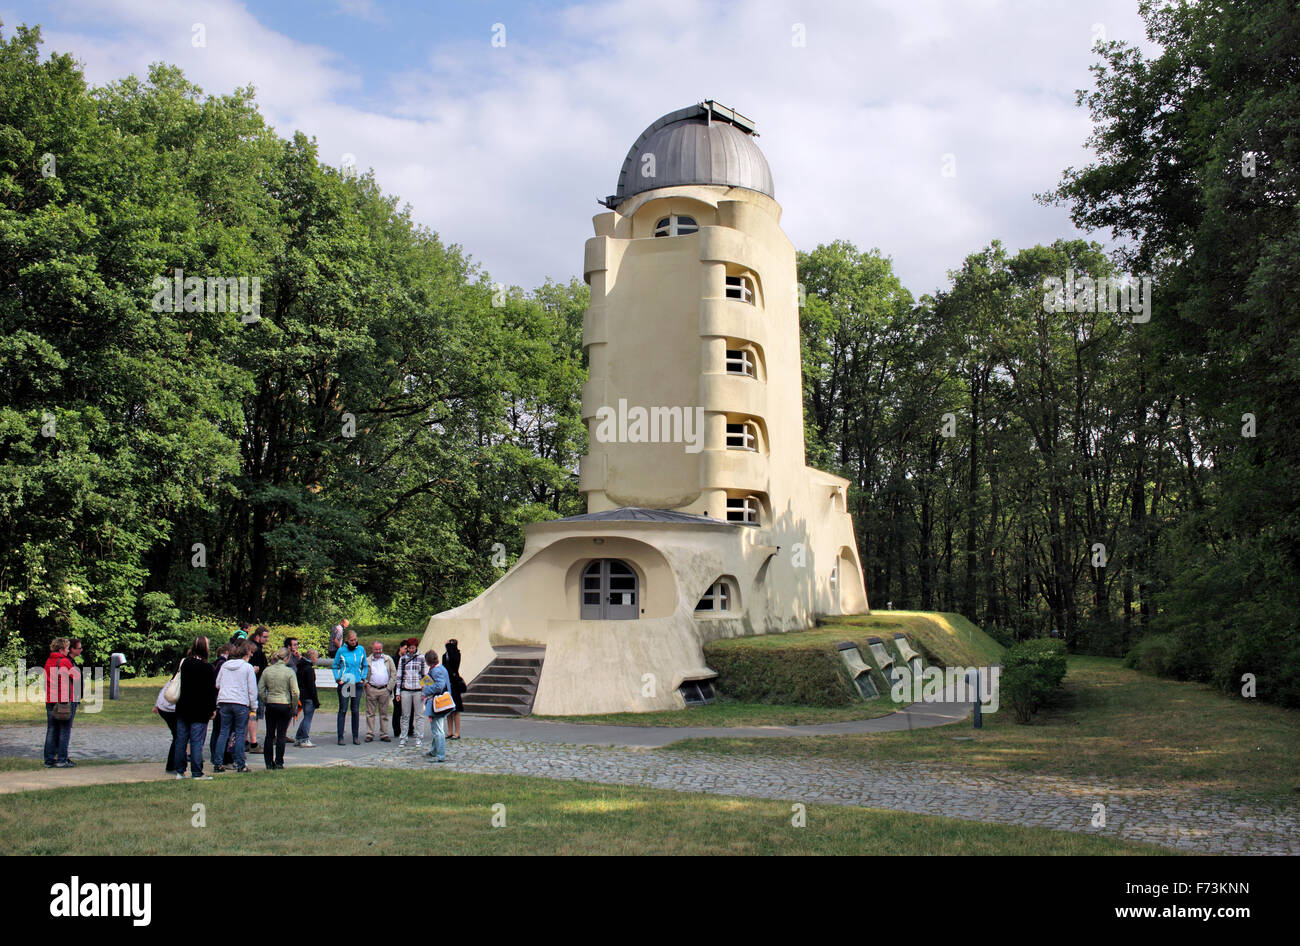 Les touristes visitant la Einsteinturm (le EinsteinTower ), Potsdam, Allemagne. Banque D'Images